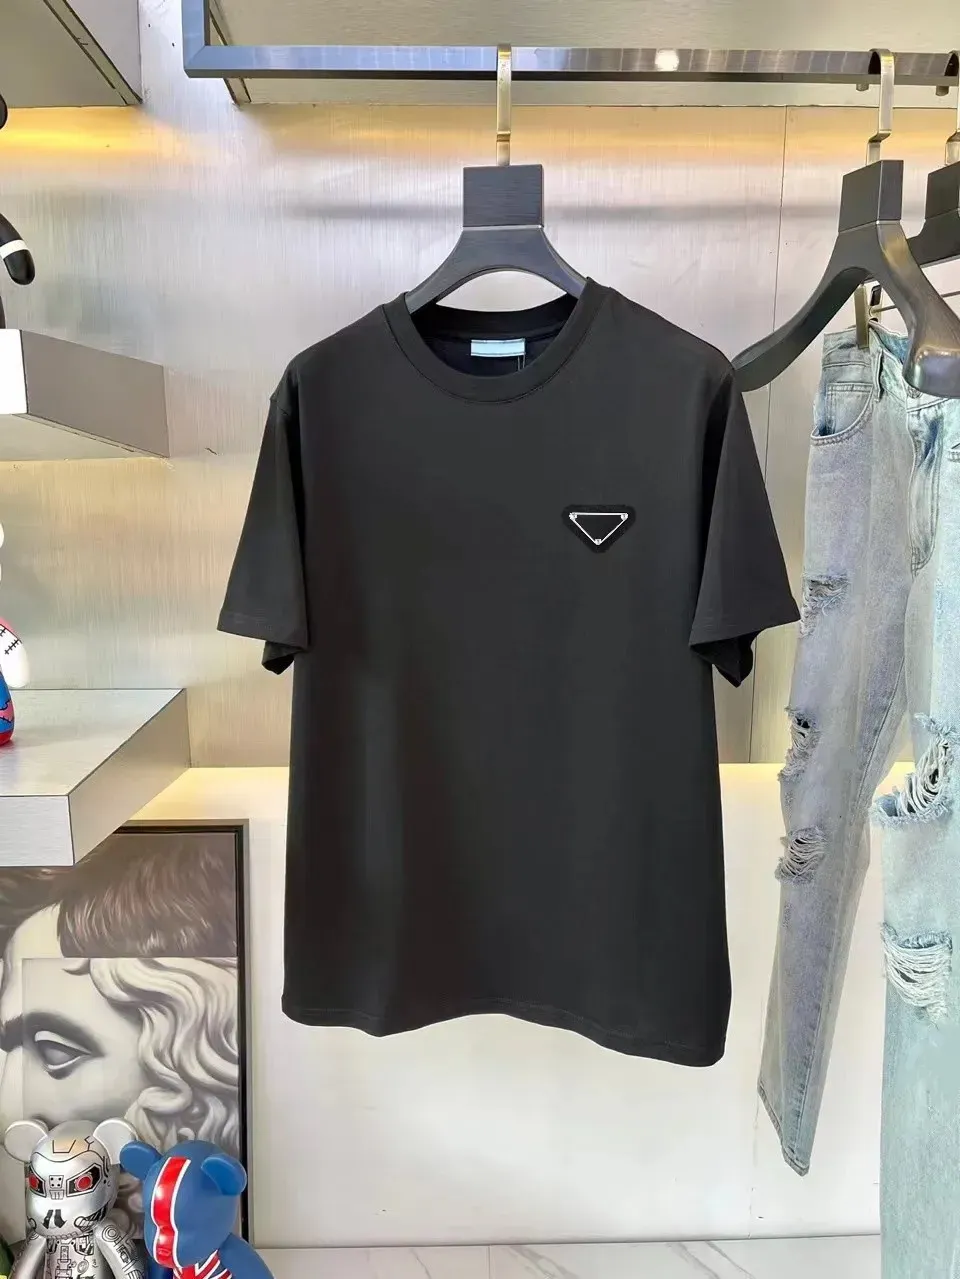 Мужская футболка дизайнерская рубашка модные топы футболка мужская черная футболка женская одежда с буквенным принтом летние хлопковые повседневные футболки больших размеров азиатский размер S-3XL мужская одежда